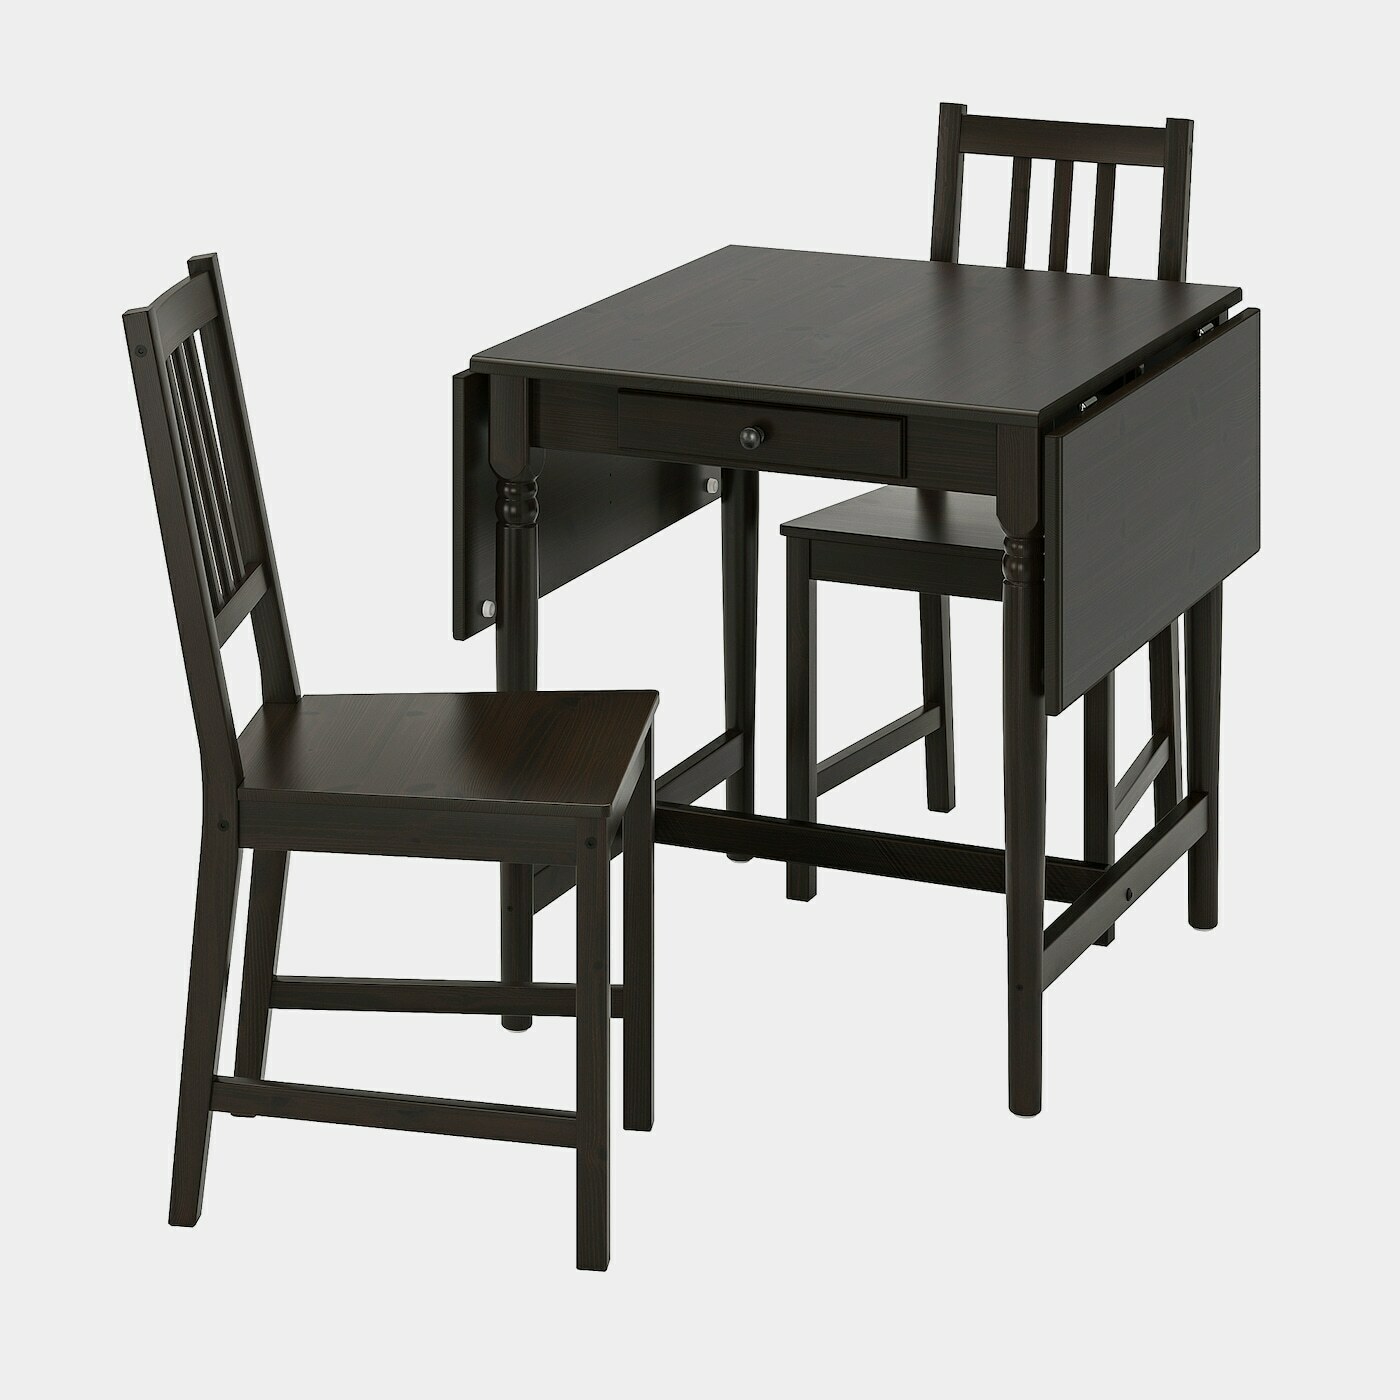 INGATORP / STEFAN Tisch und 2 Stühle  -  - Möbel Ideen für dein Zuhause von Home Trends. Möbel Trends von Social Media Influencer für dein Skandi Zuhause.